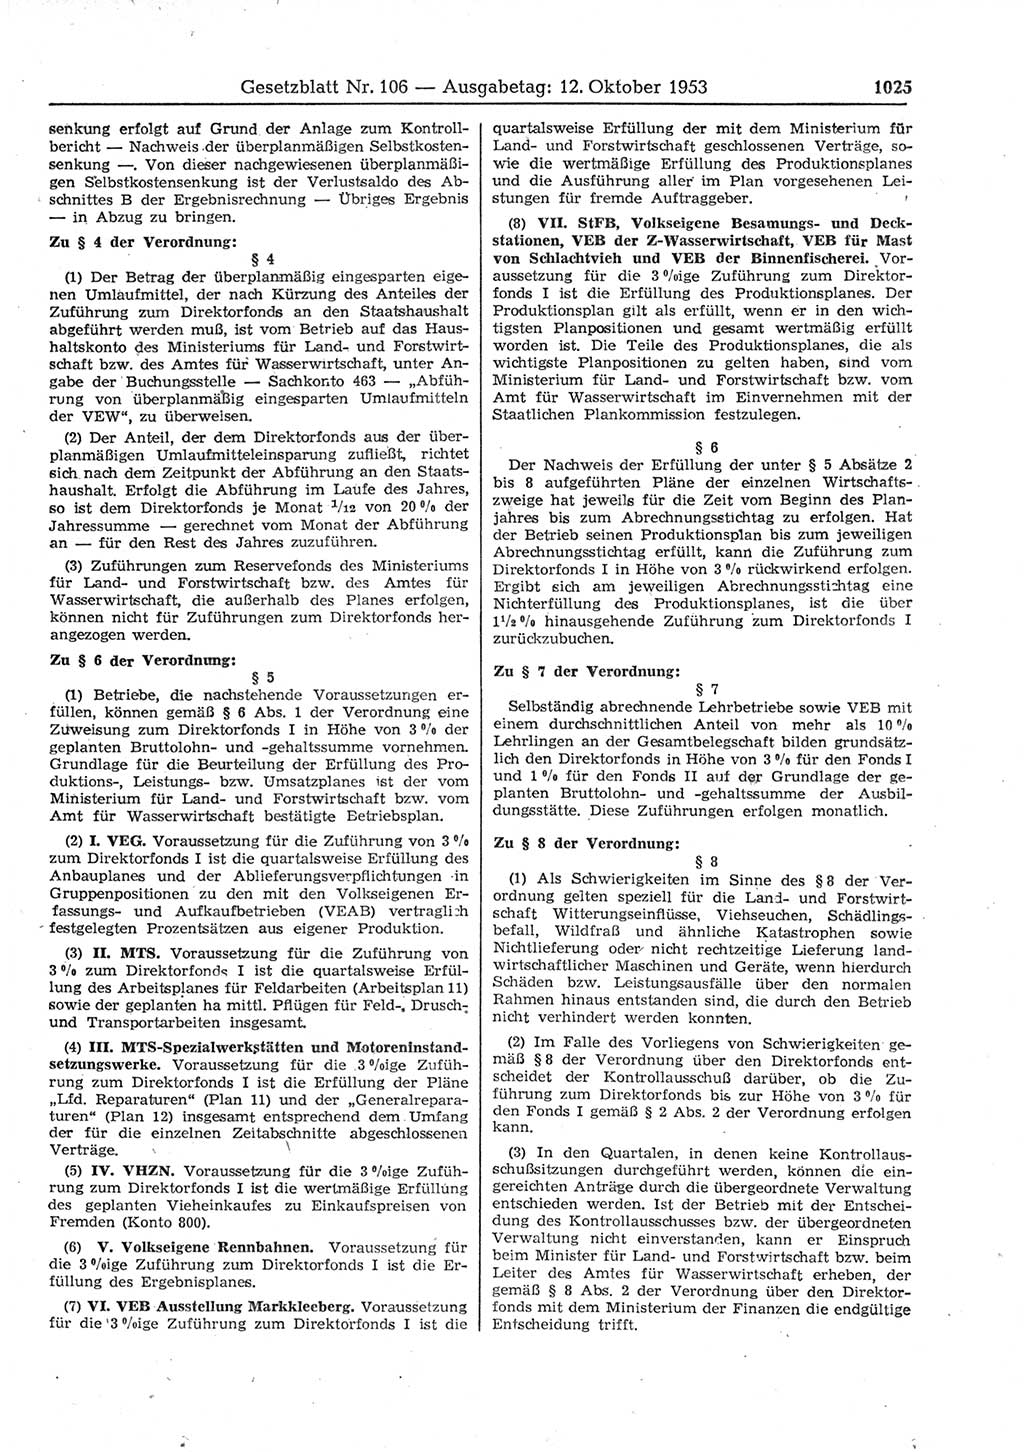 Gesetzblatt (GBl.) der Deutschen Demokratischen Republik (DDR) 1953, Seite 1025 (GBl. DDR 1953, S. 1025)